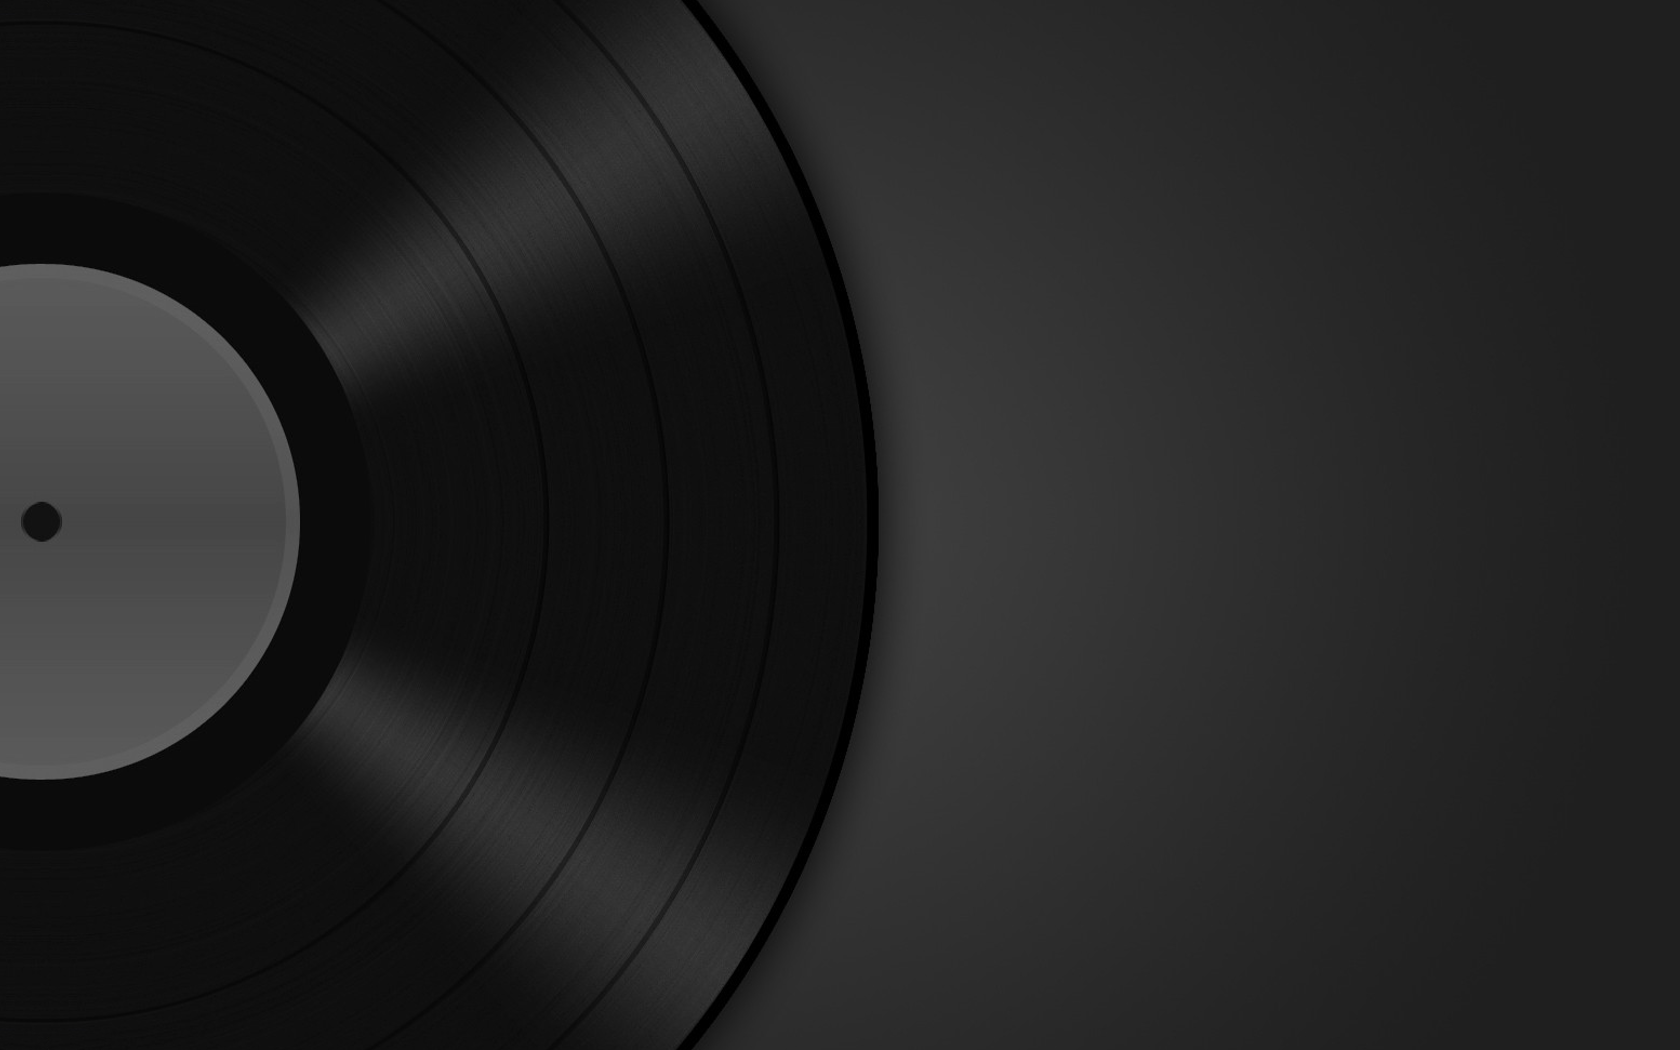 musica da parati tumblr,nero,disco grammofonico,bianco e nero,monocromatico,cerchio